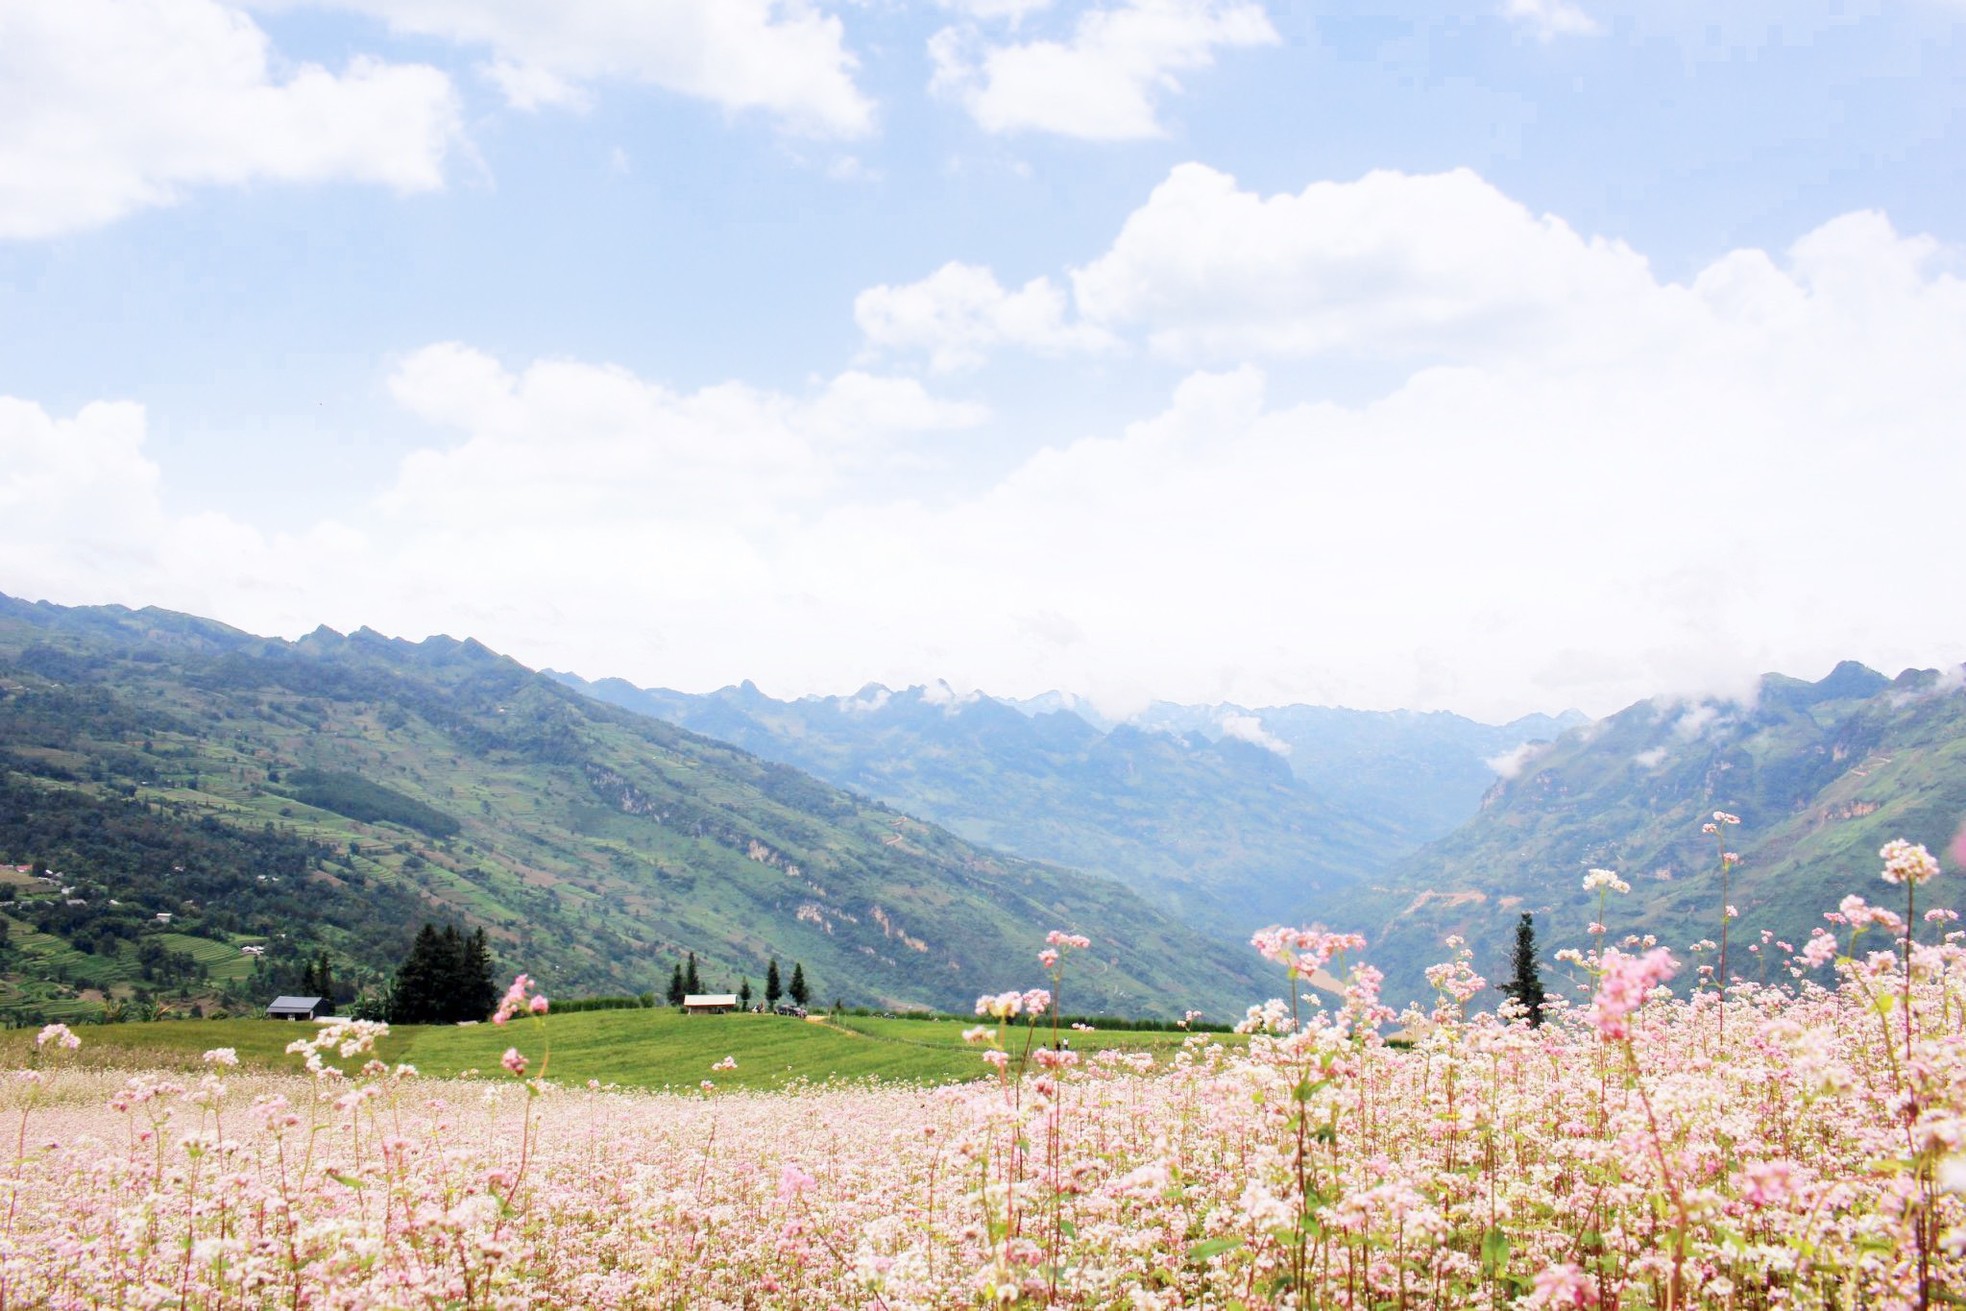 Hoa tam giác mạch phủ hồng 'thảo nguyên Thụy Sĩ giữa lòng Hà Giang' - Ảnh 13.